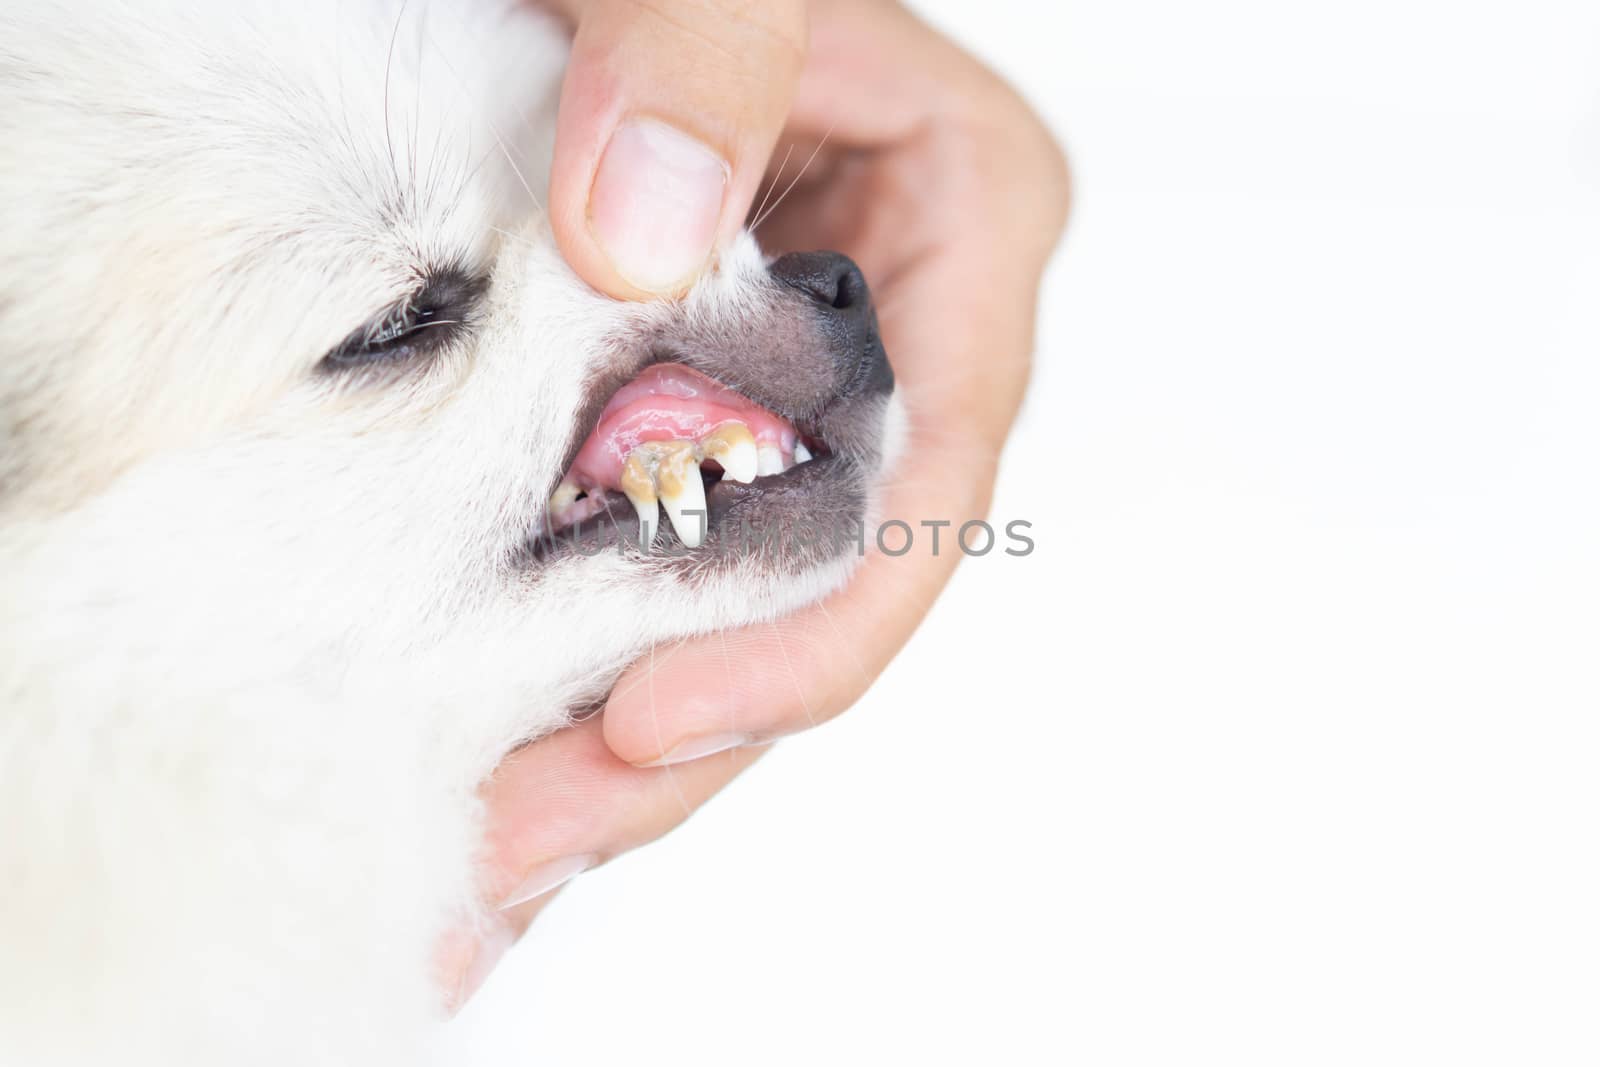 Closeup teeth of dog with tartar, pet health care concept, selec by pt.pongsak@gmail.com